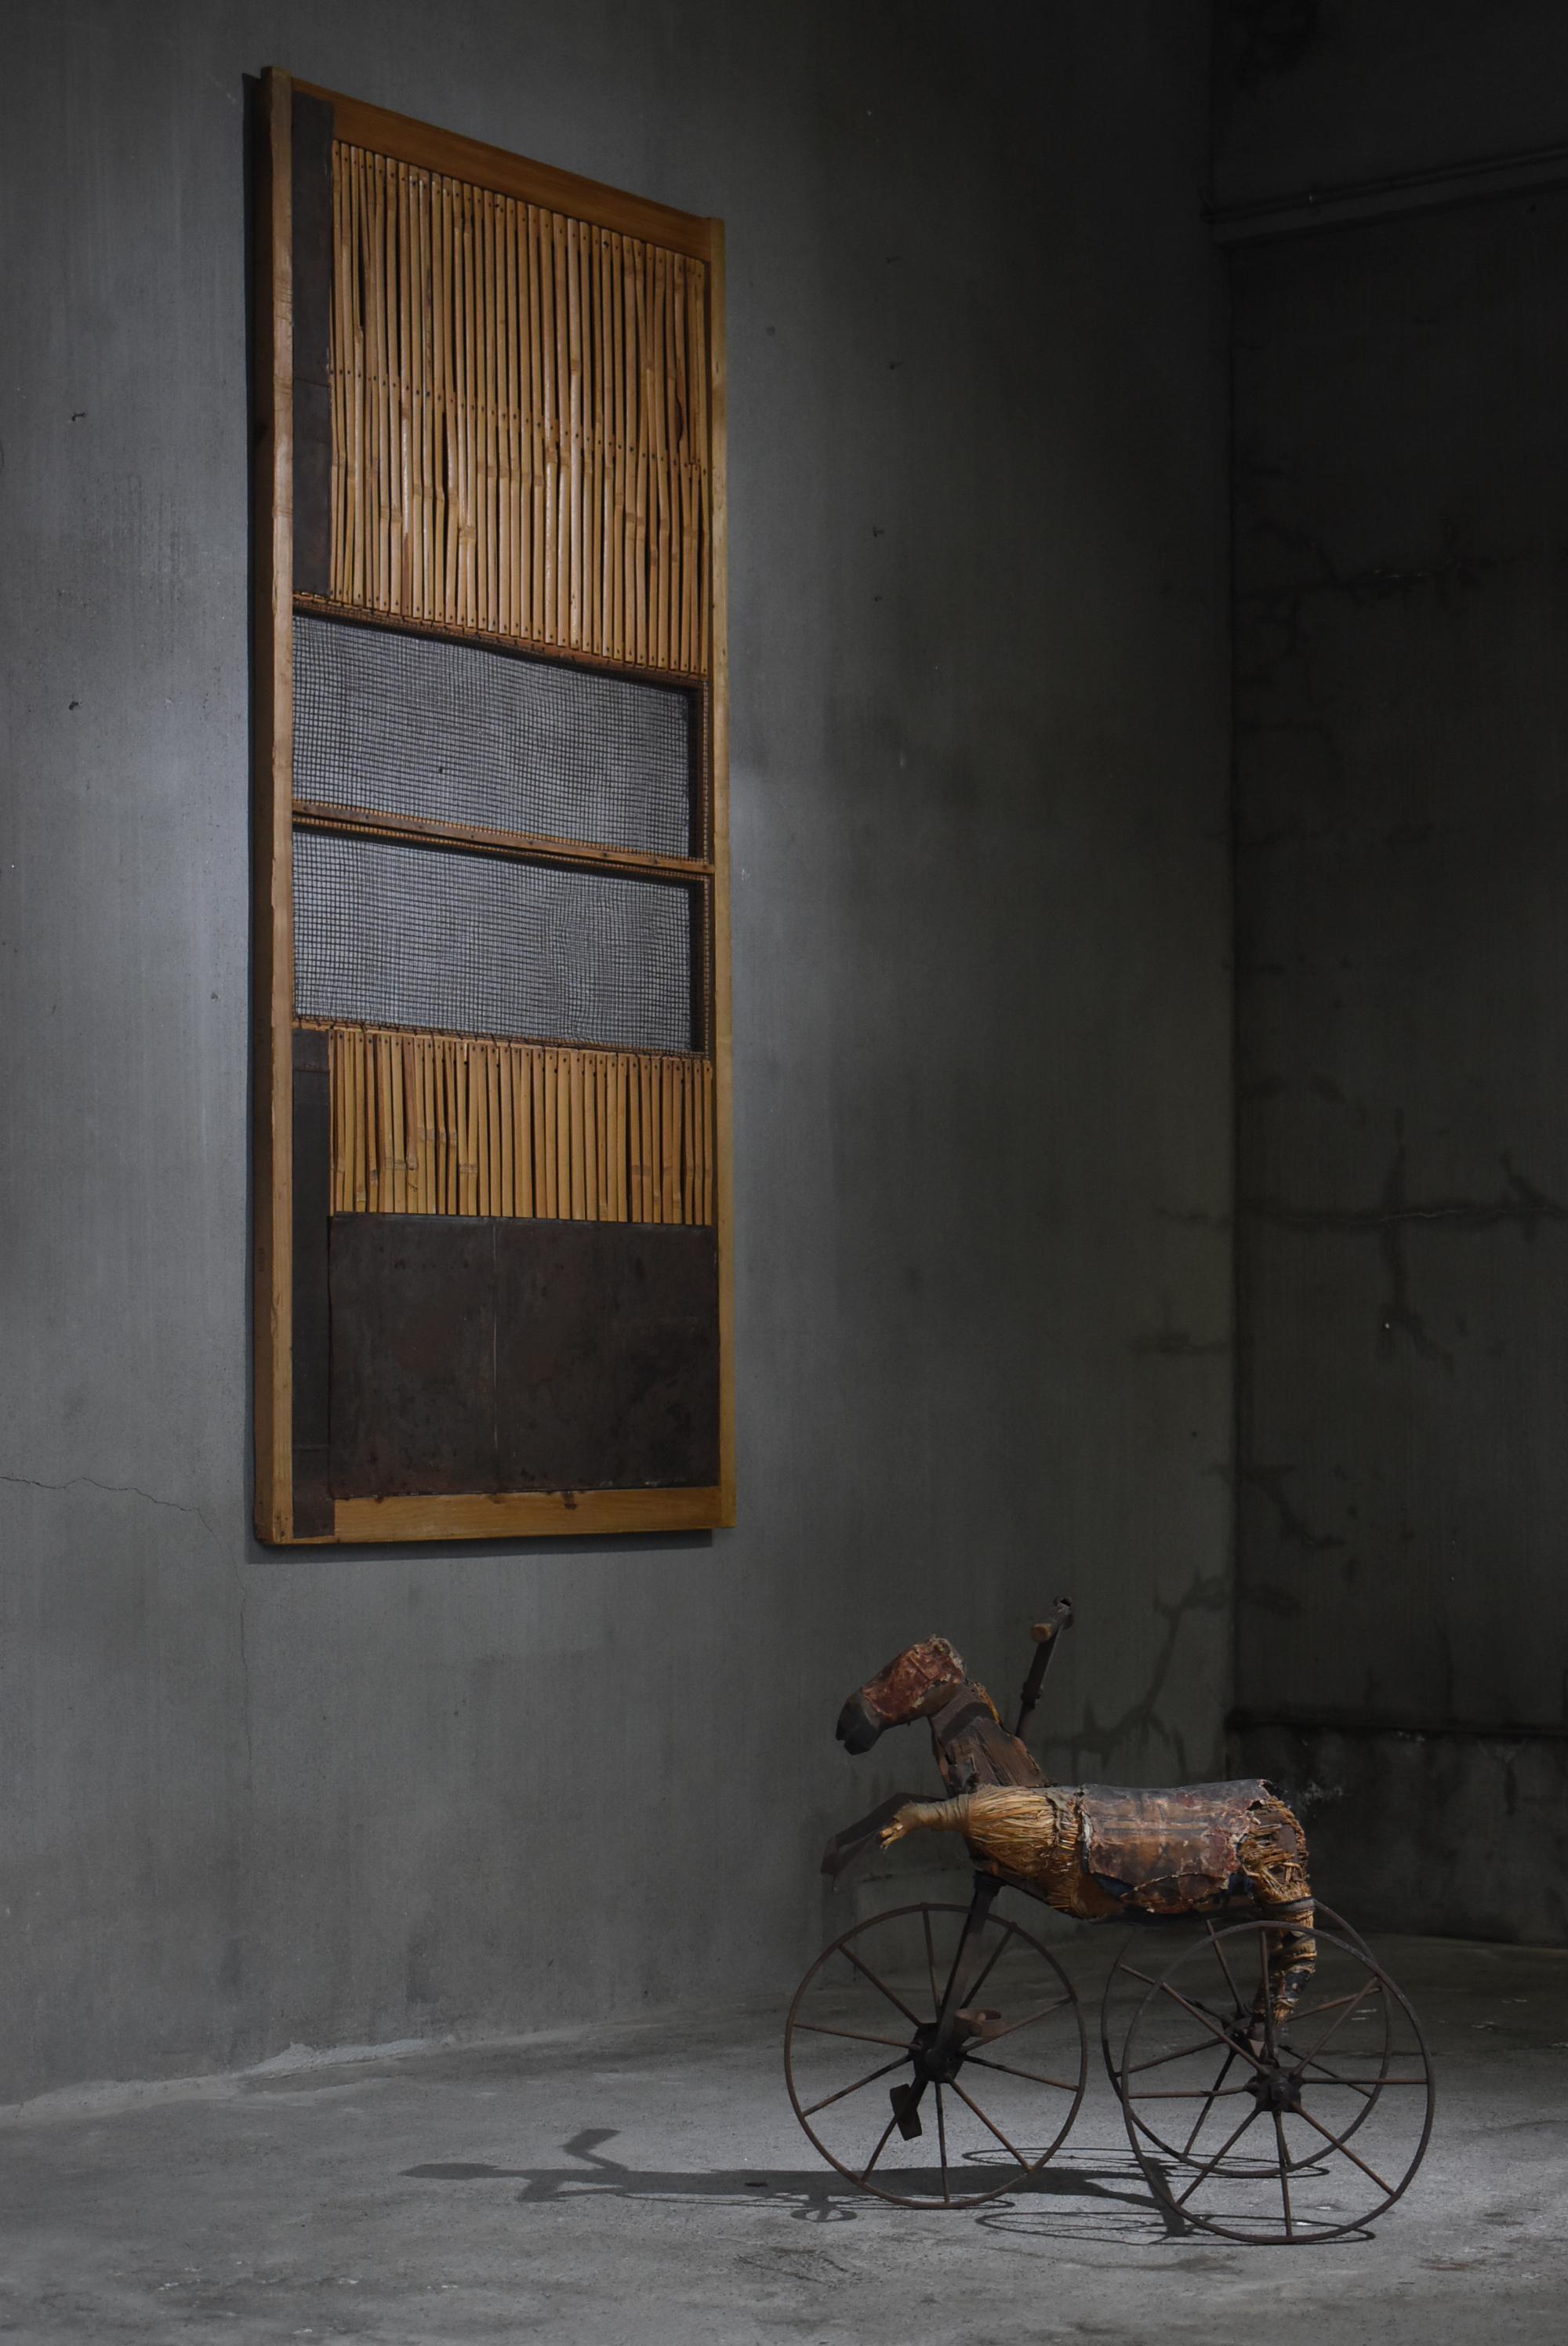 Il s'agit d'une très ancienne porte coulissante fabriquée au Japon.
Il date de la période Meiji (1860-1920).
Il est principalement fabriqué en bois de cèdre et en bambou, et renforcé par de l'étain.
Cette composition est très unique et ressemble à